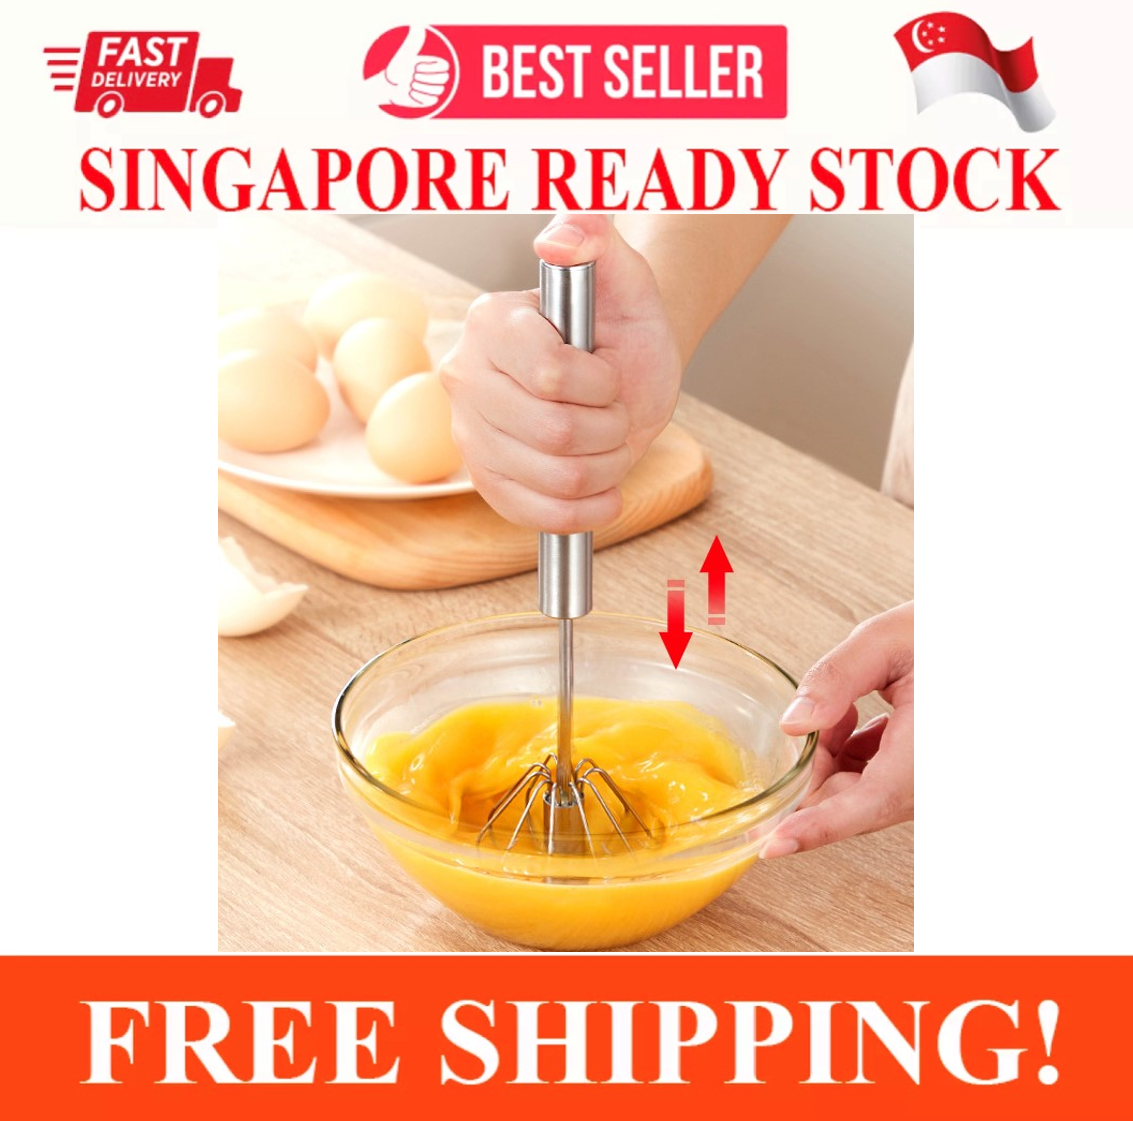 Automatic stirrer/ automatic soup paste cooking - 50L - SGE Singapore